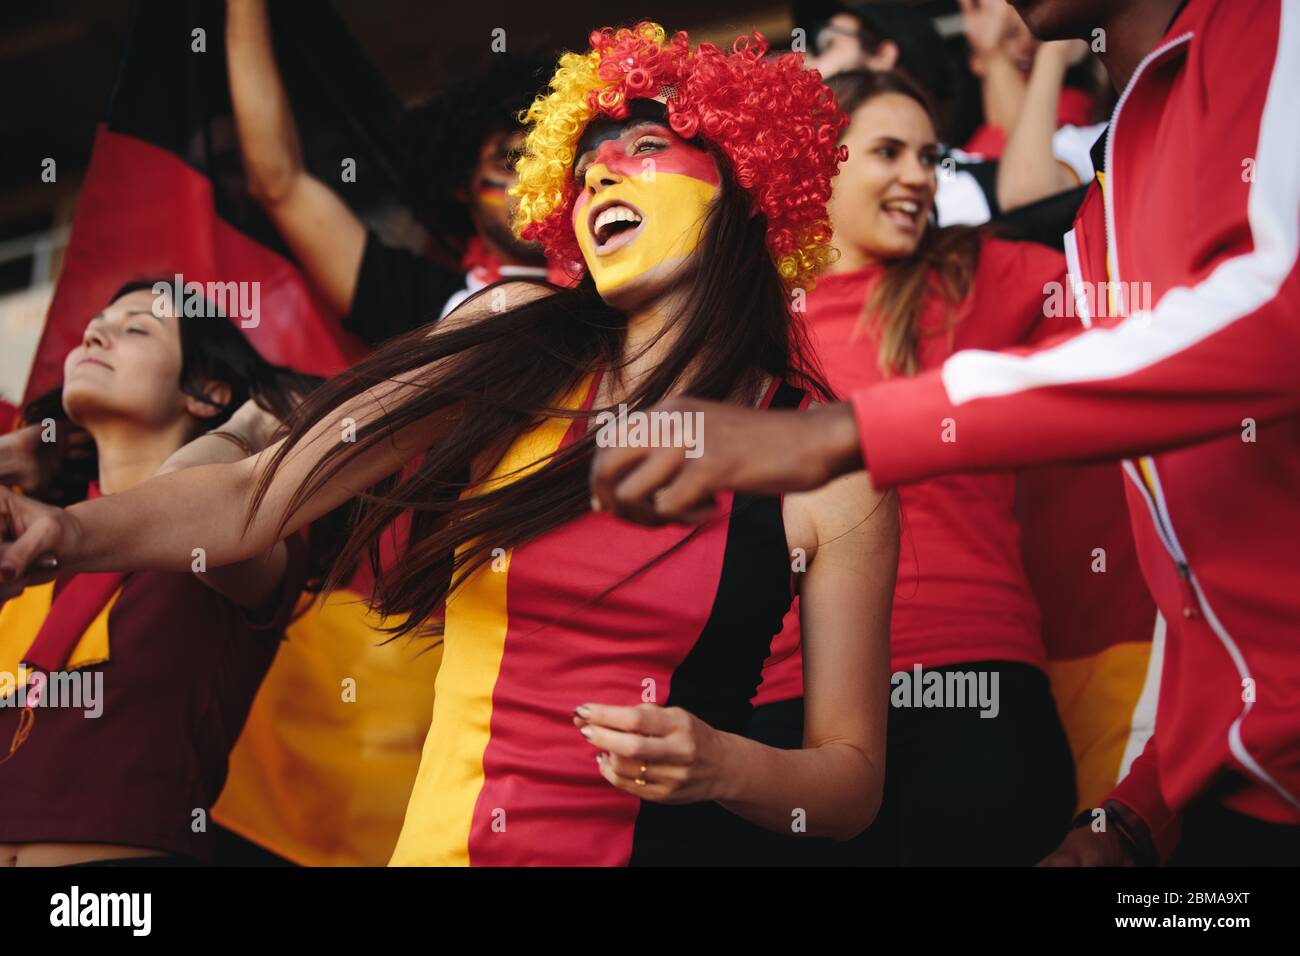 Mujer en el estadio con una peluca y su cara pintada con colores de bandera alemana que animan a su equipo nacional. Mujer de Alemania disfrutando en zona de fans. Foto de stock